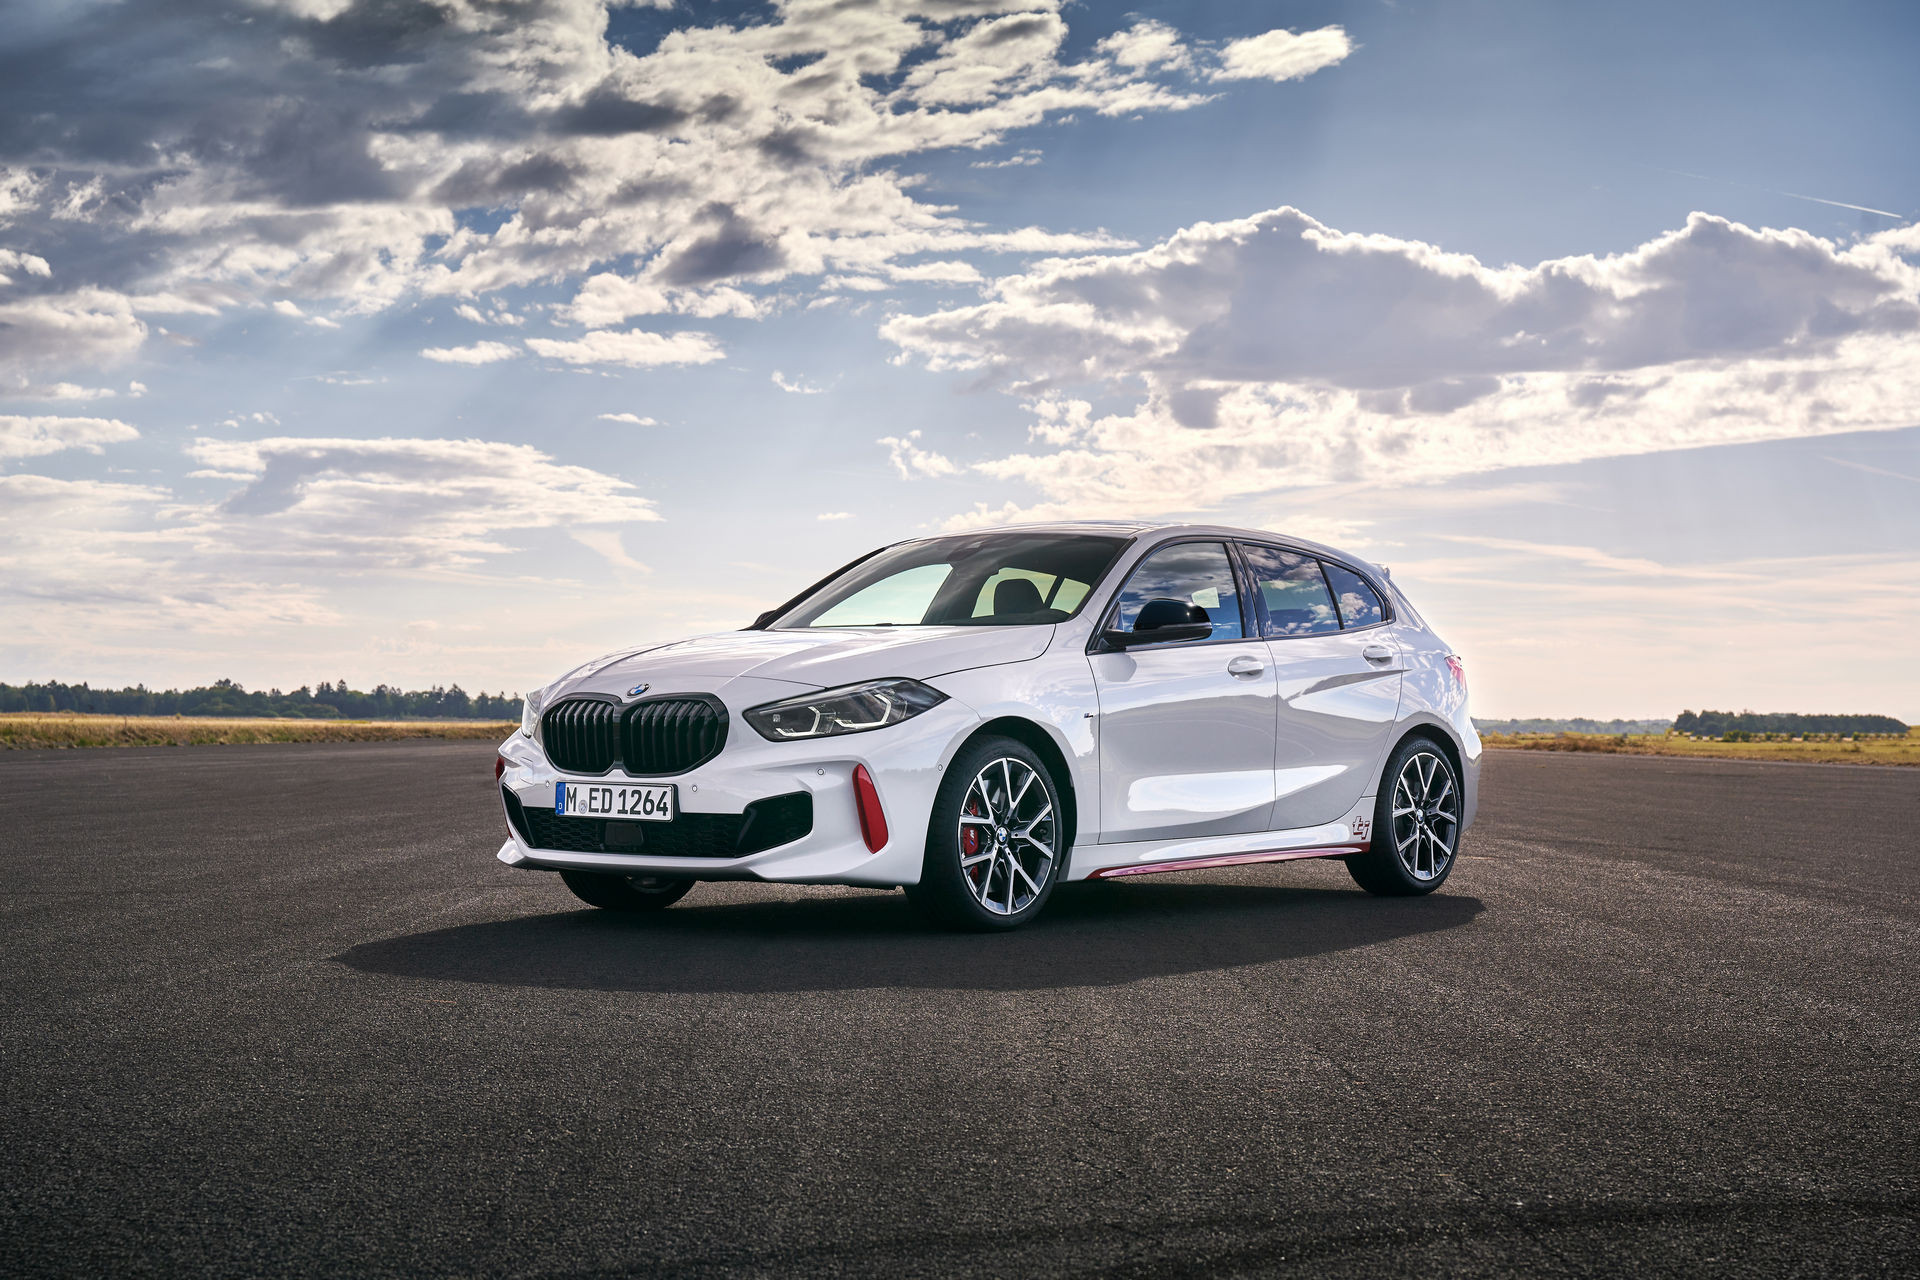 2021 BMW 128ti, önden çekişli 'hot hatch' dünyasına katıldı